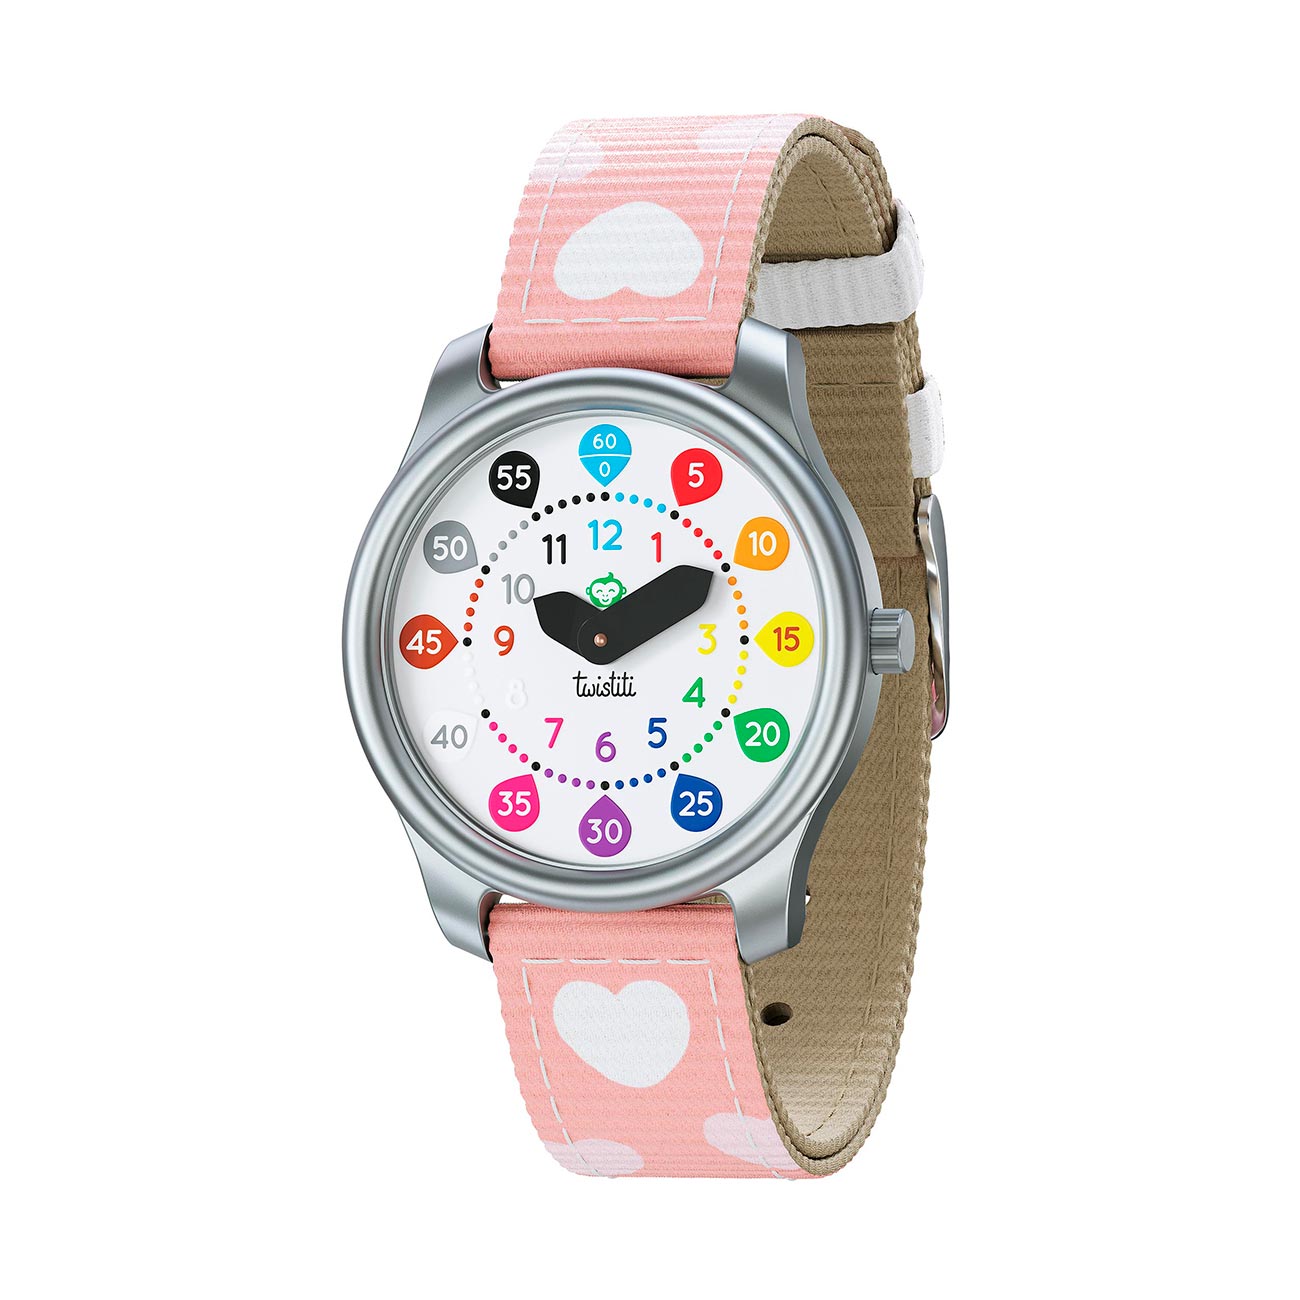 Visuel montre avec boitier nombre et bracelet coeurs blancs sur fond rose. Montre Twistiti.